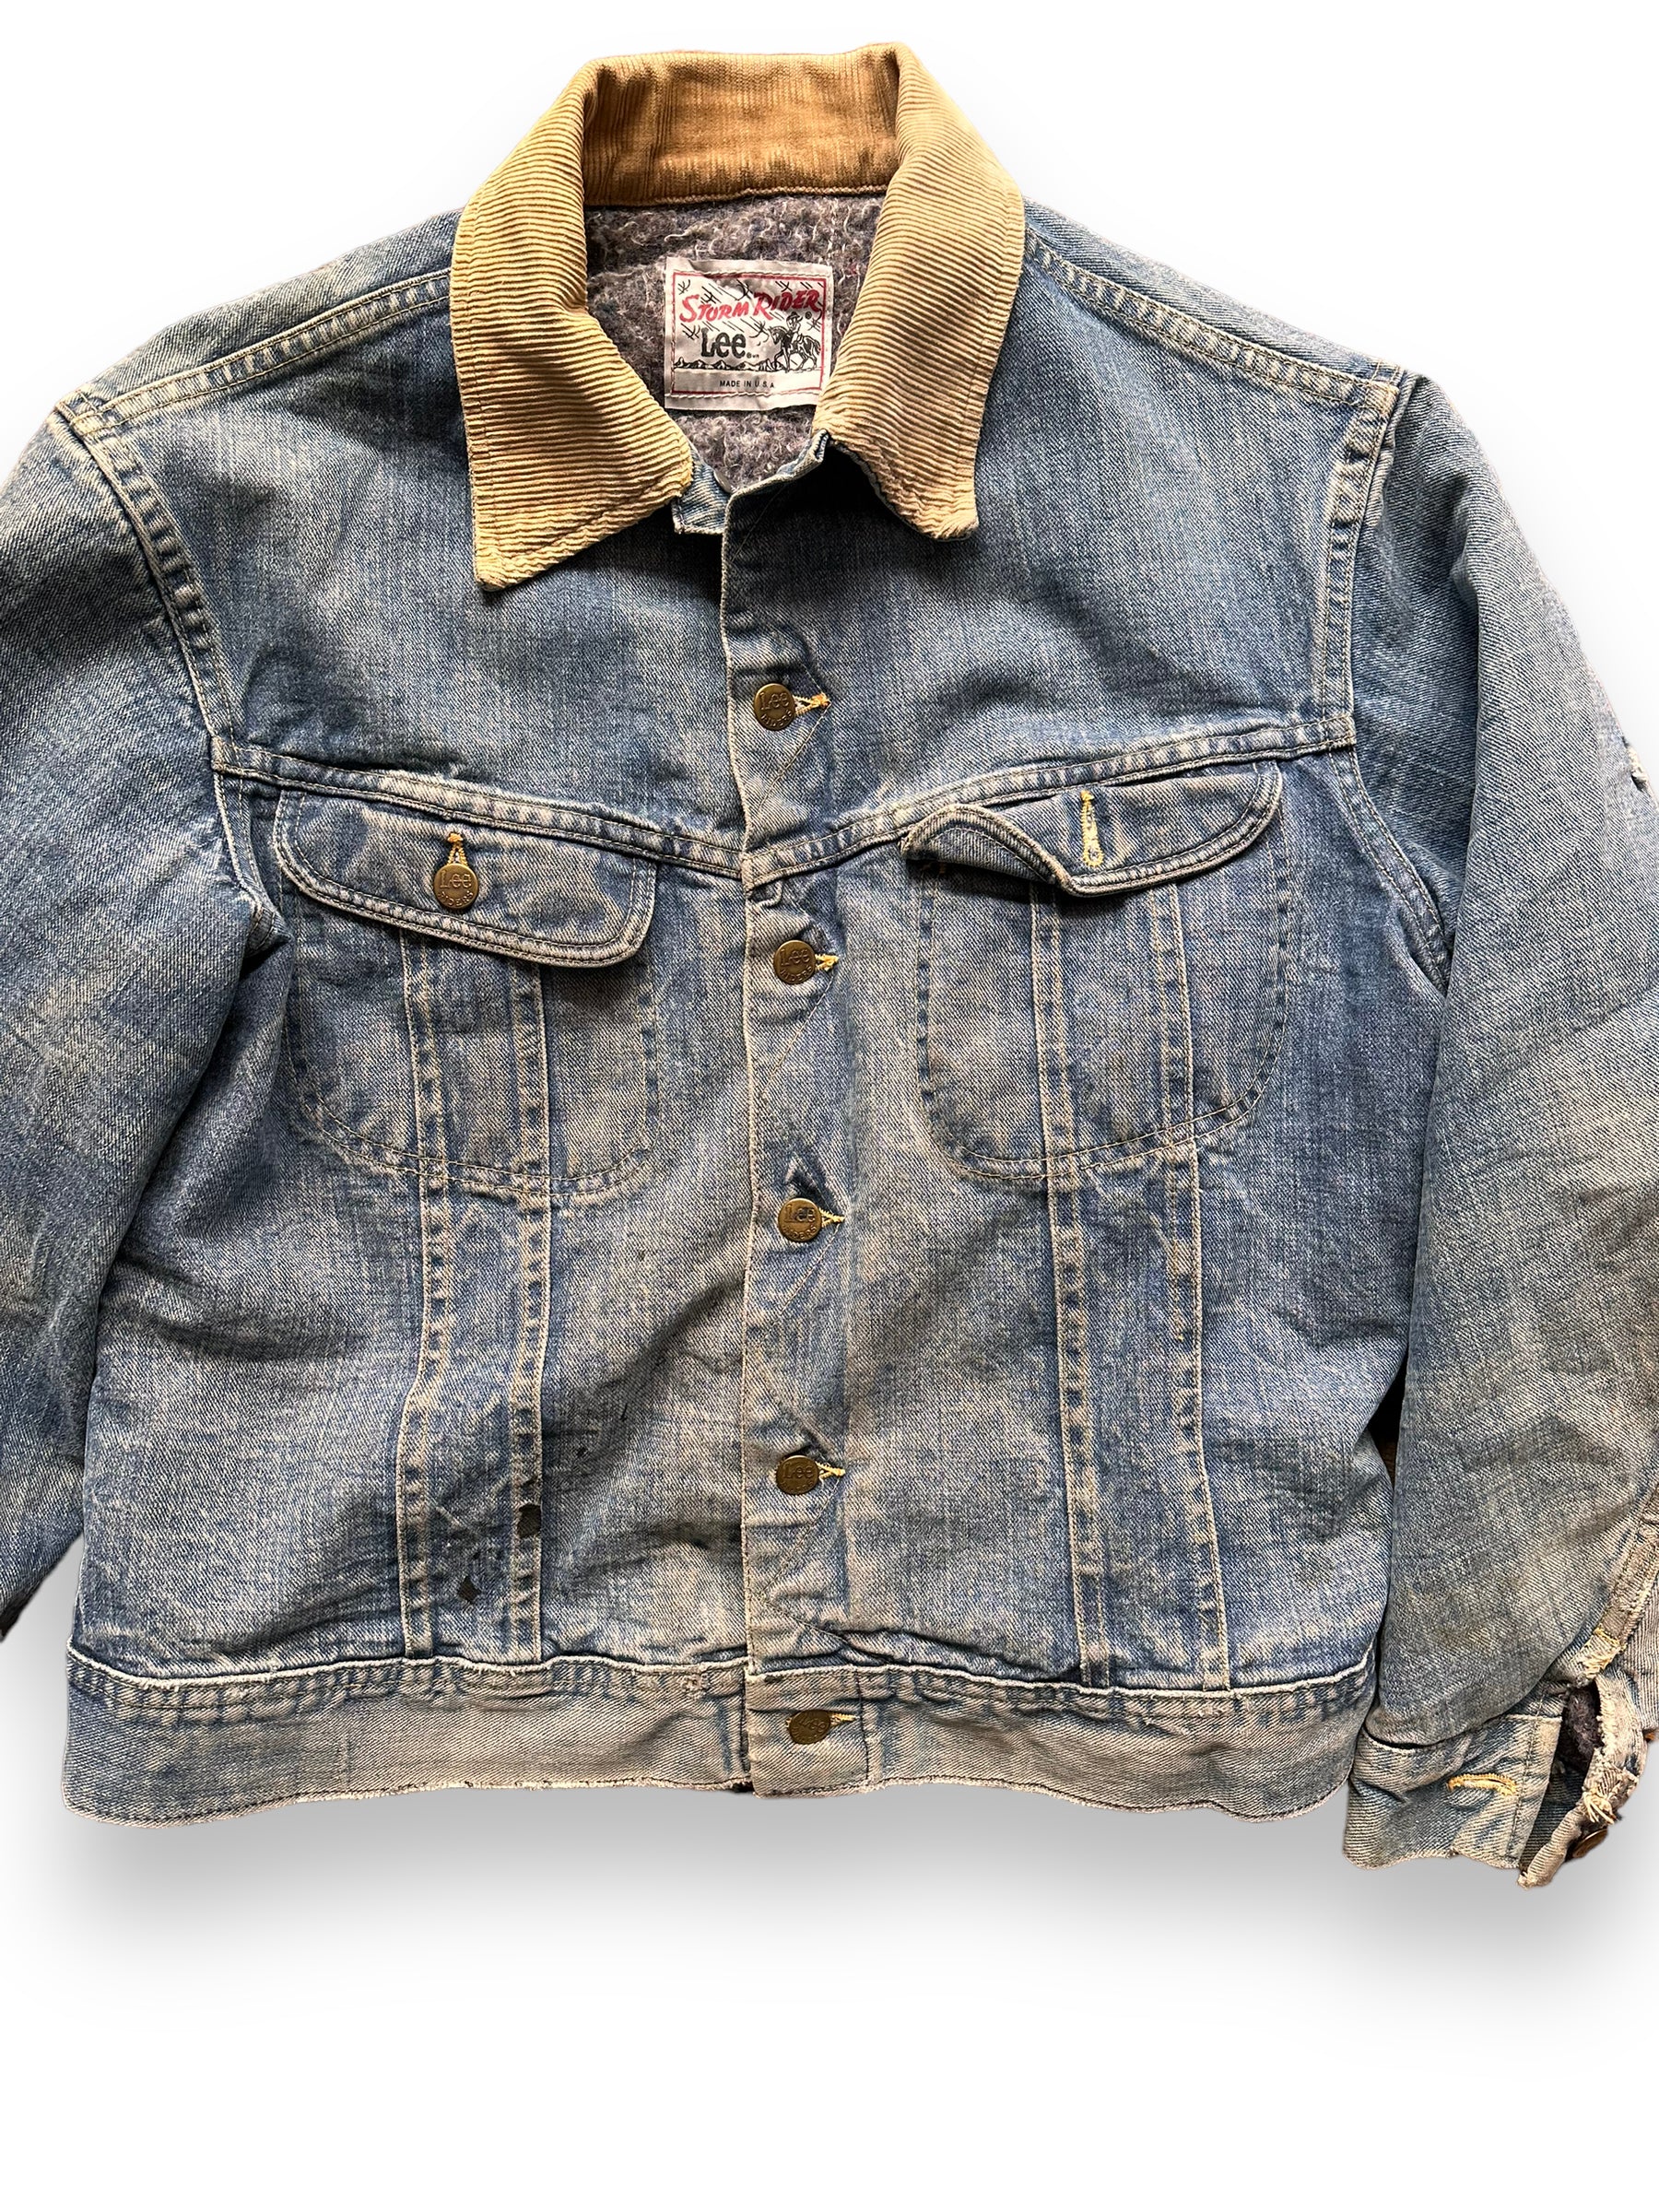 Front Detail on Vintage Blanket Lined Lee Storm Rider Denim Jacket SZ L| Barn Owl Vintage | Seattle True Vintage Workwear